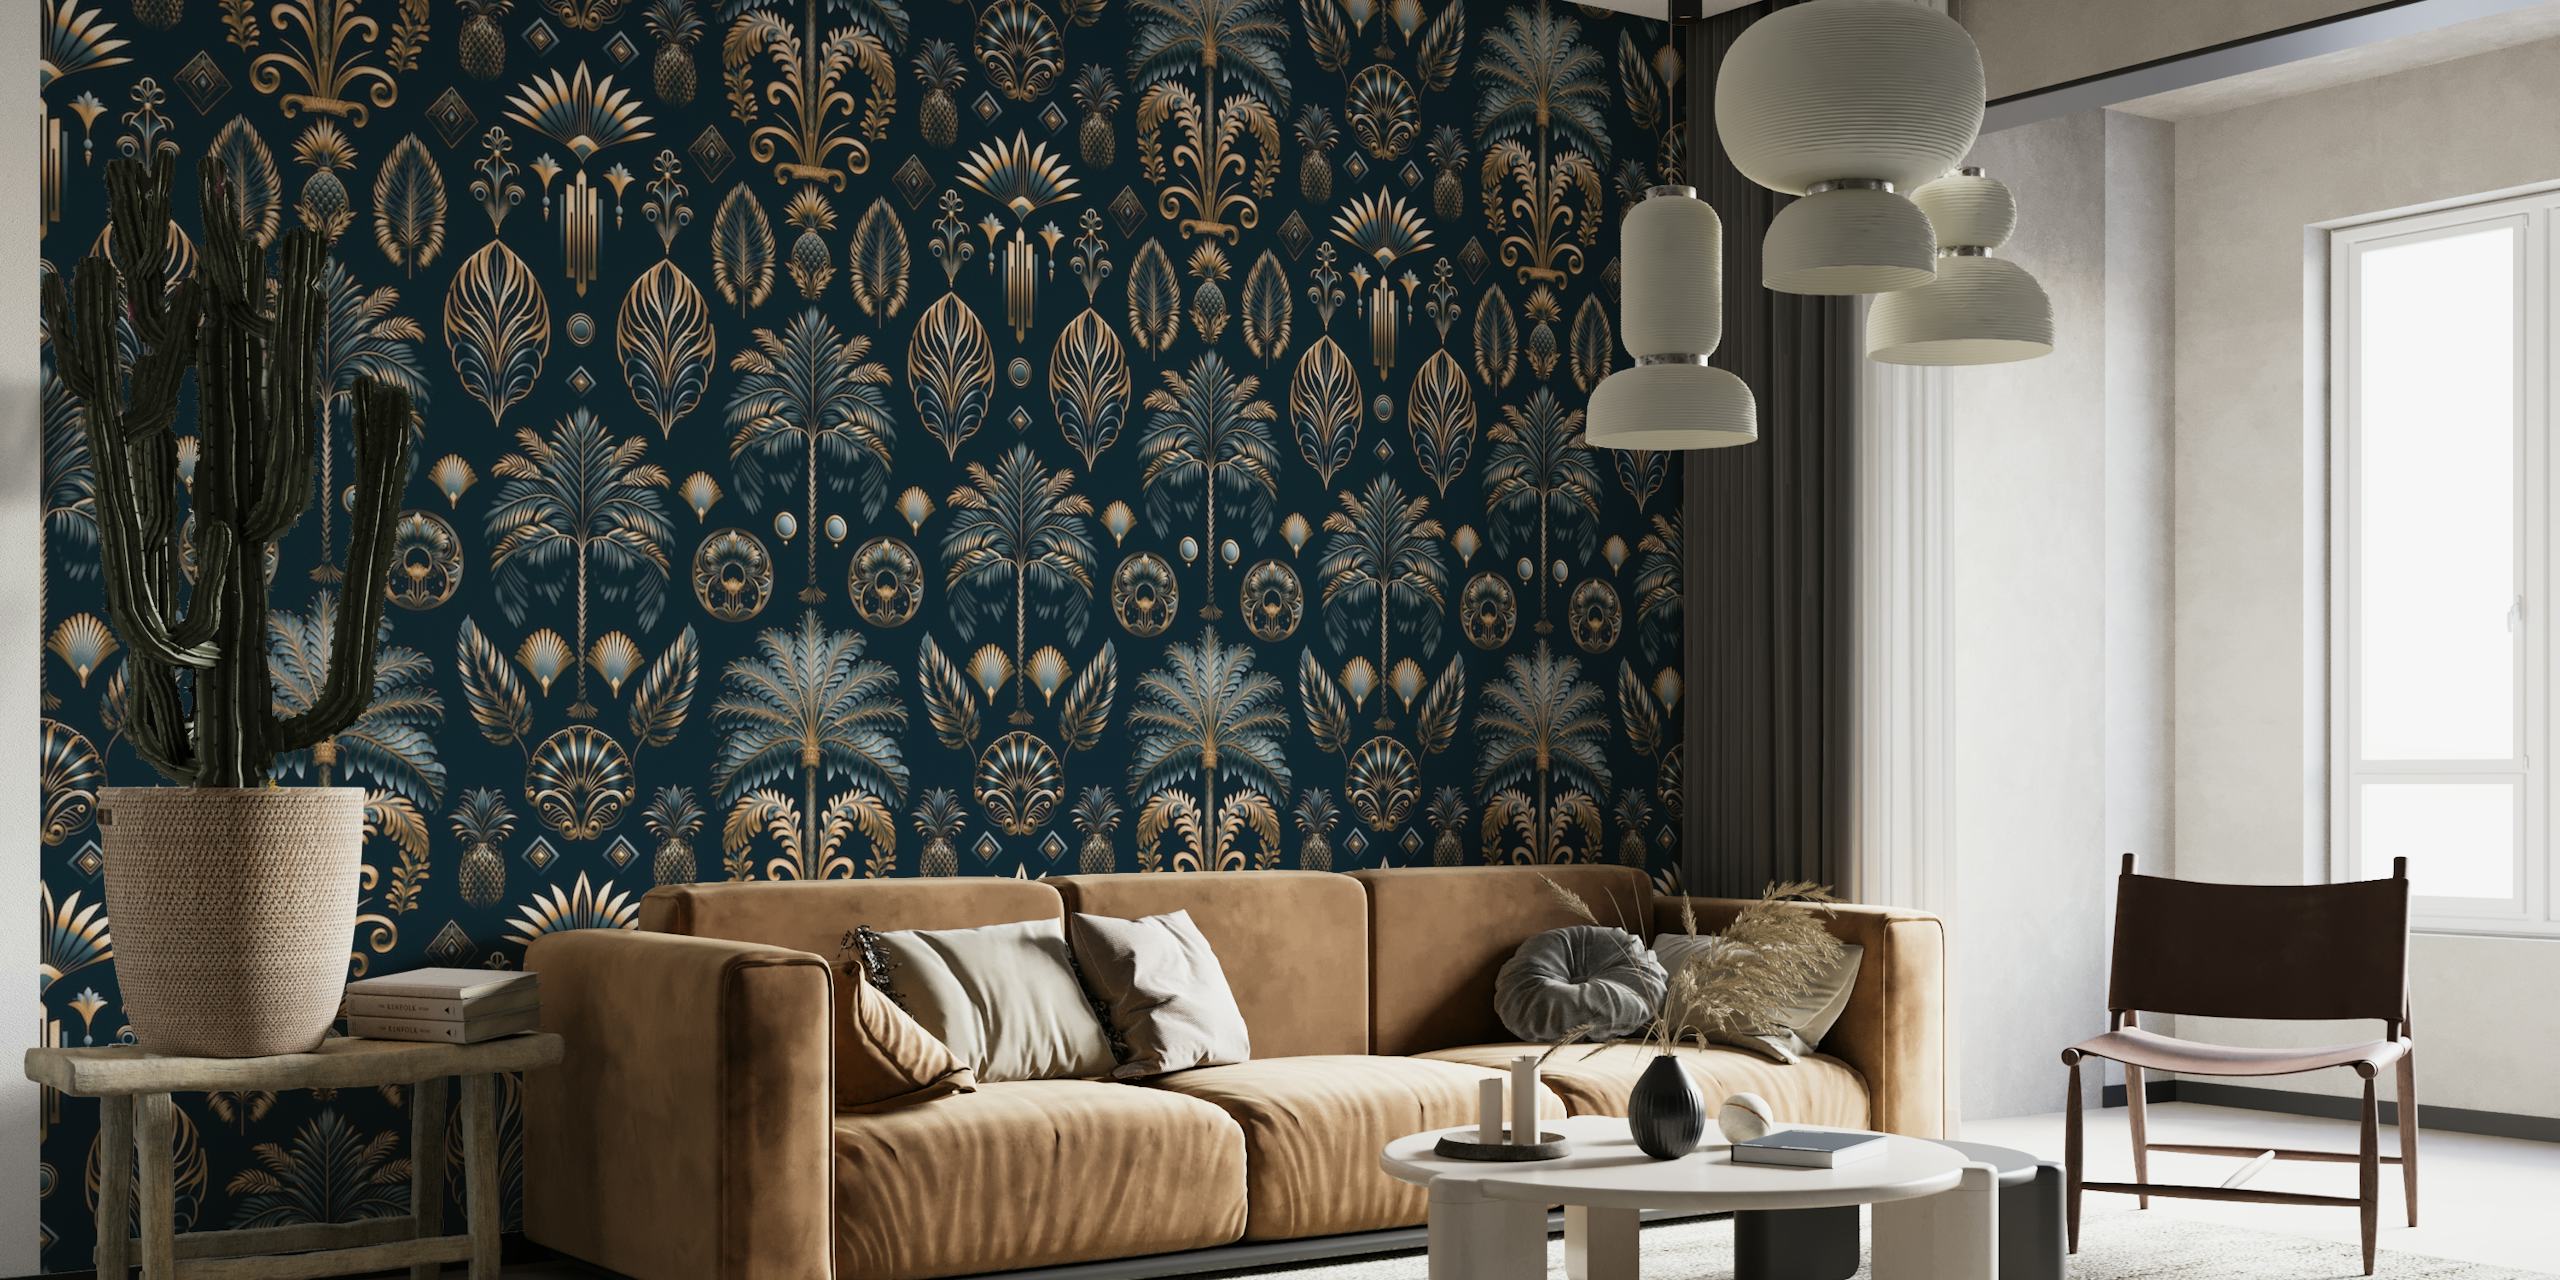 Mural de parede luxuoso com decoração artística com palmeiras e ornamentos elegantes